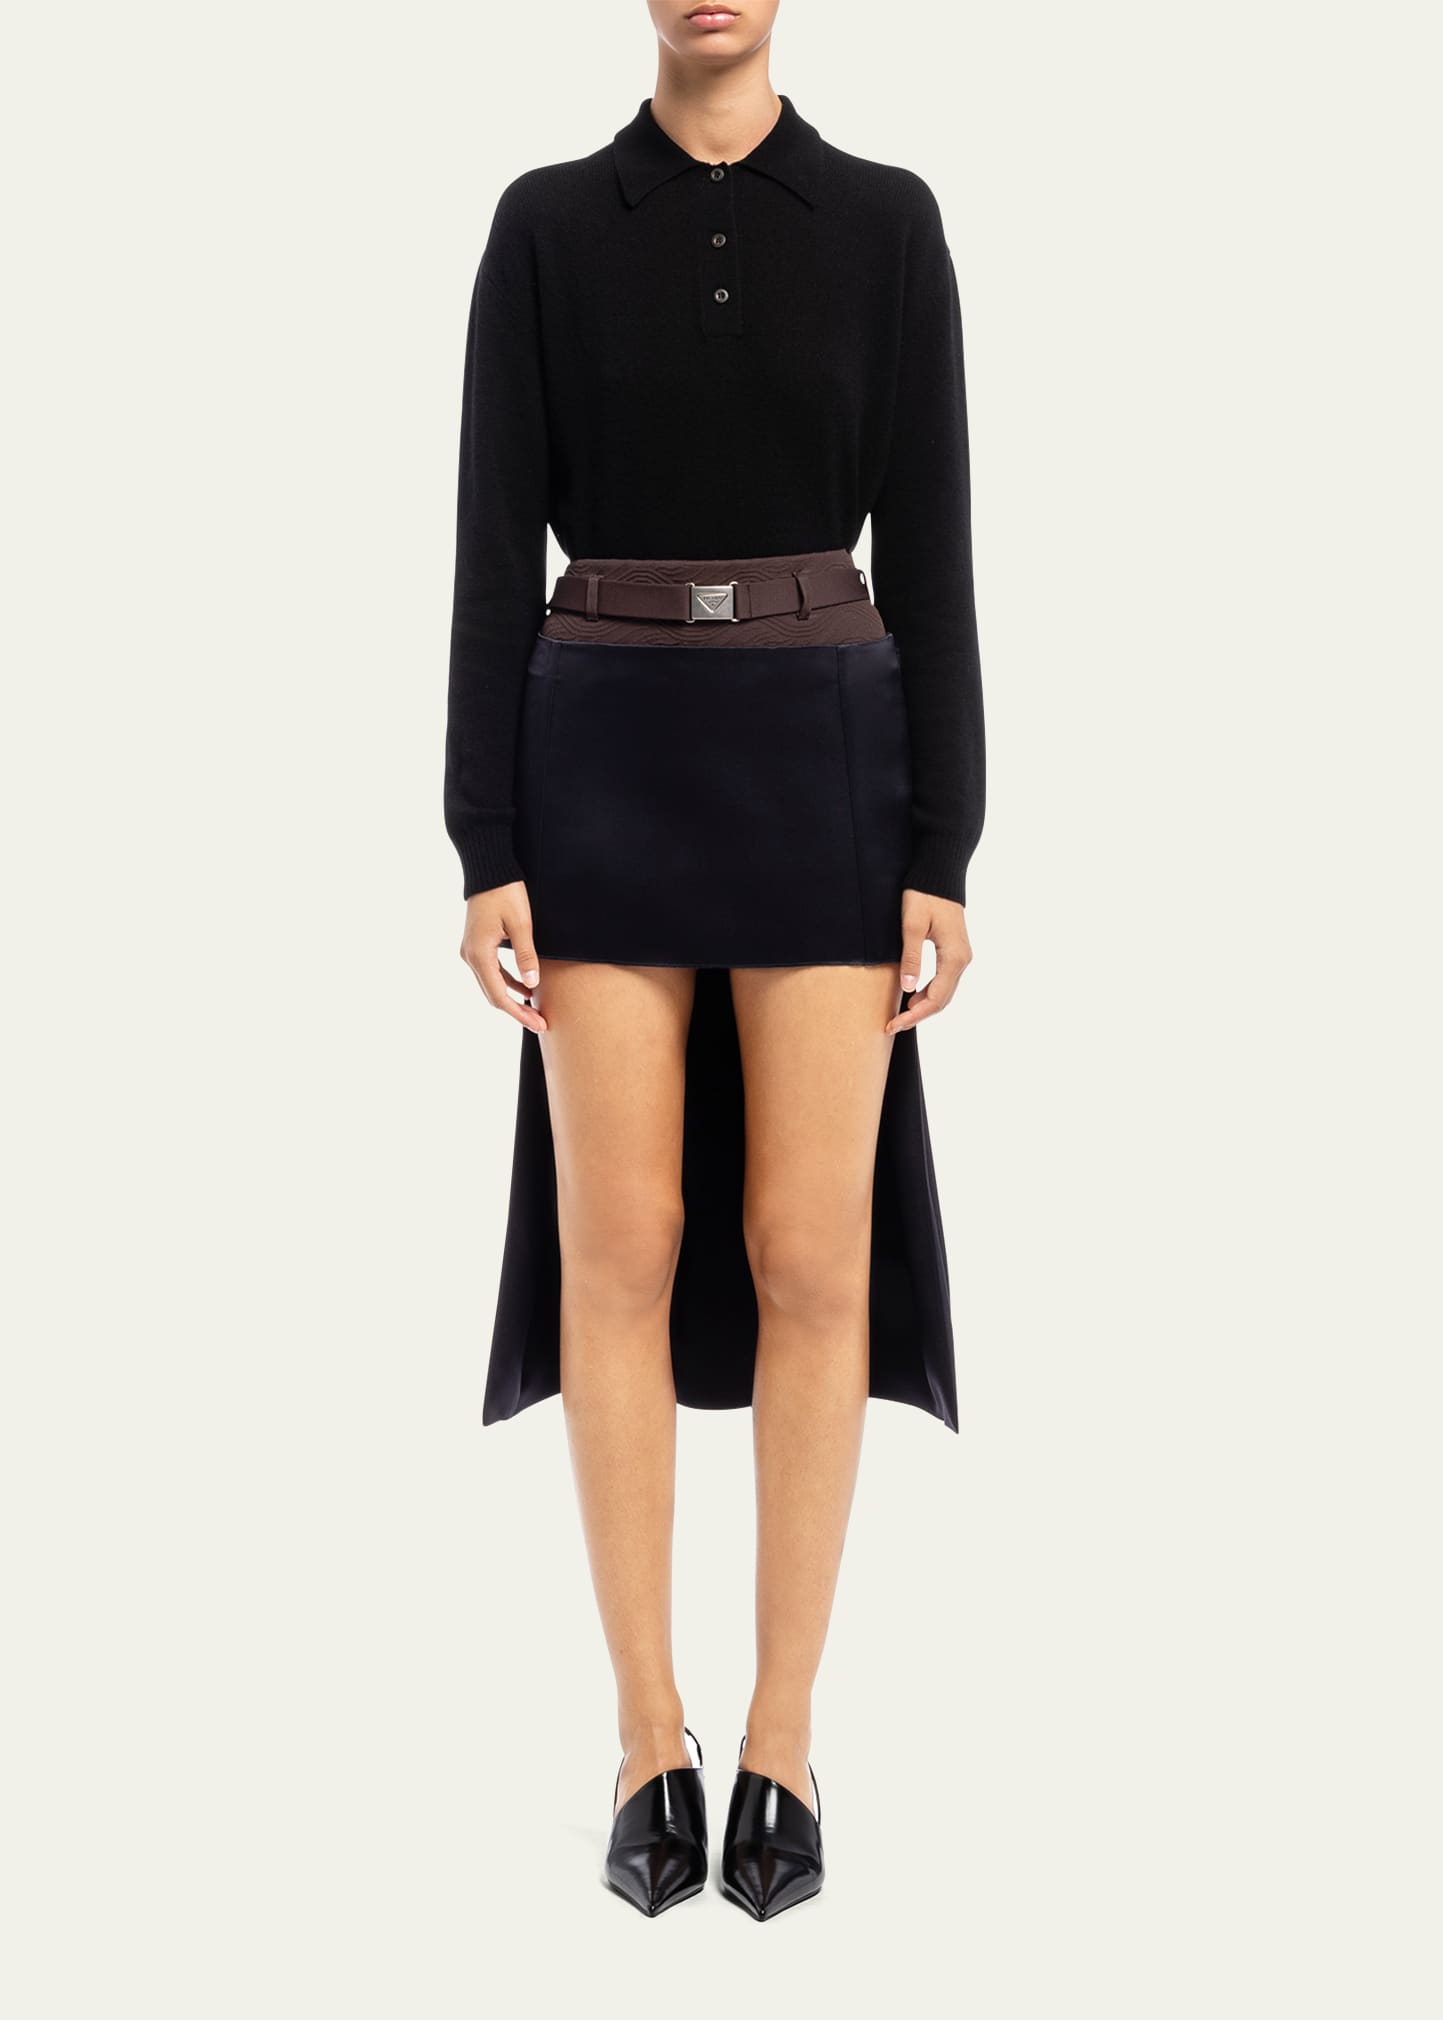 Prada Satin Mini Skirt w/ Pleated Train - Bergdorf Goodman